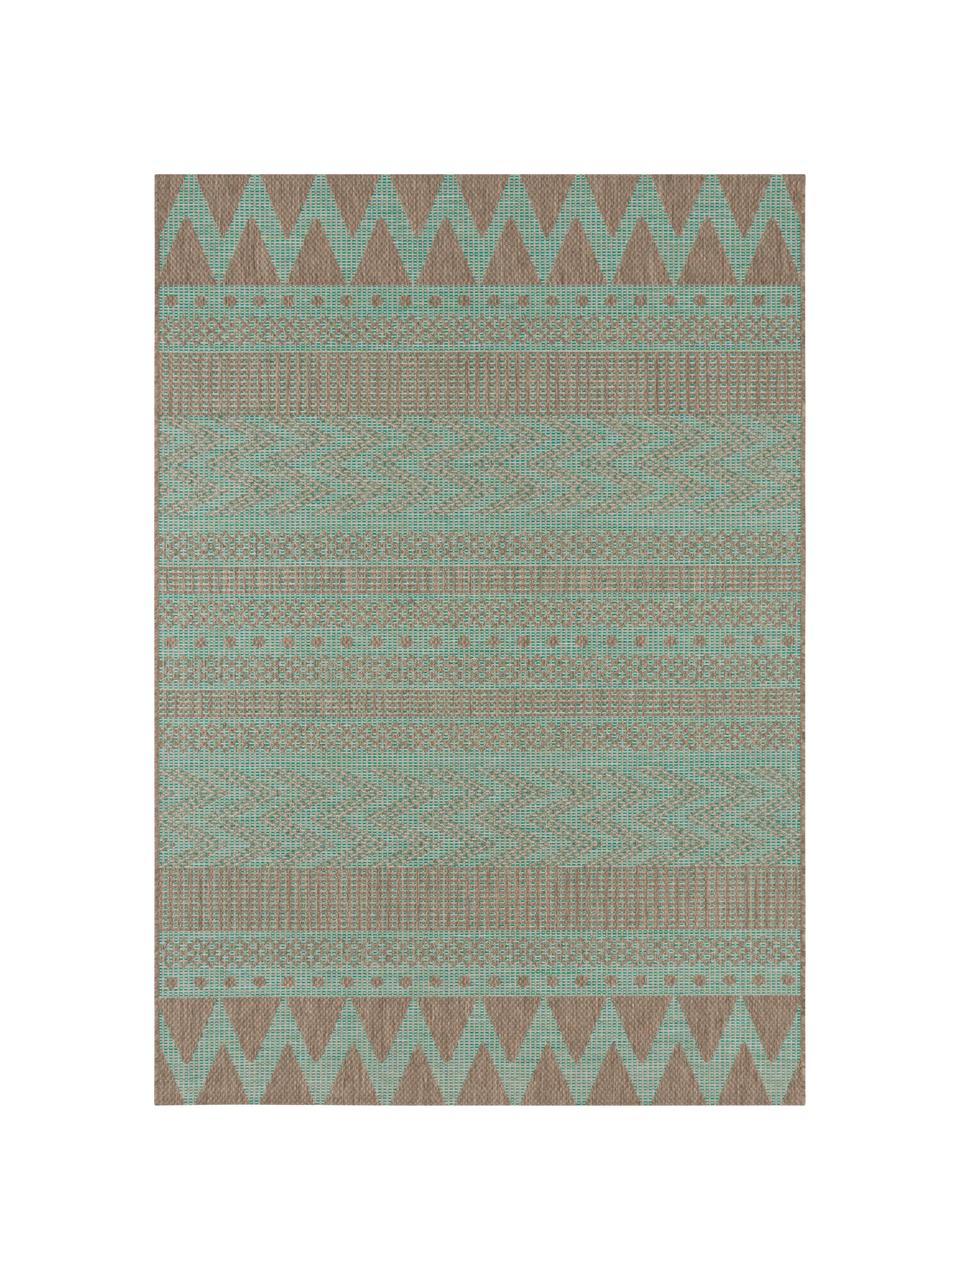 In- & Outdoor-Teppich Sidon mit grafischem Muster, 100% Polypropylen, Grün, Taupe, B 200 x L 290 cm (Größe L)